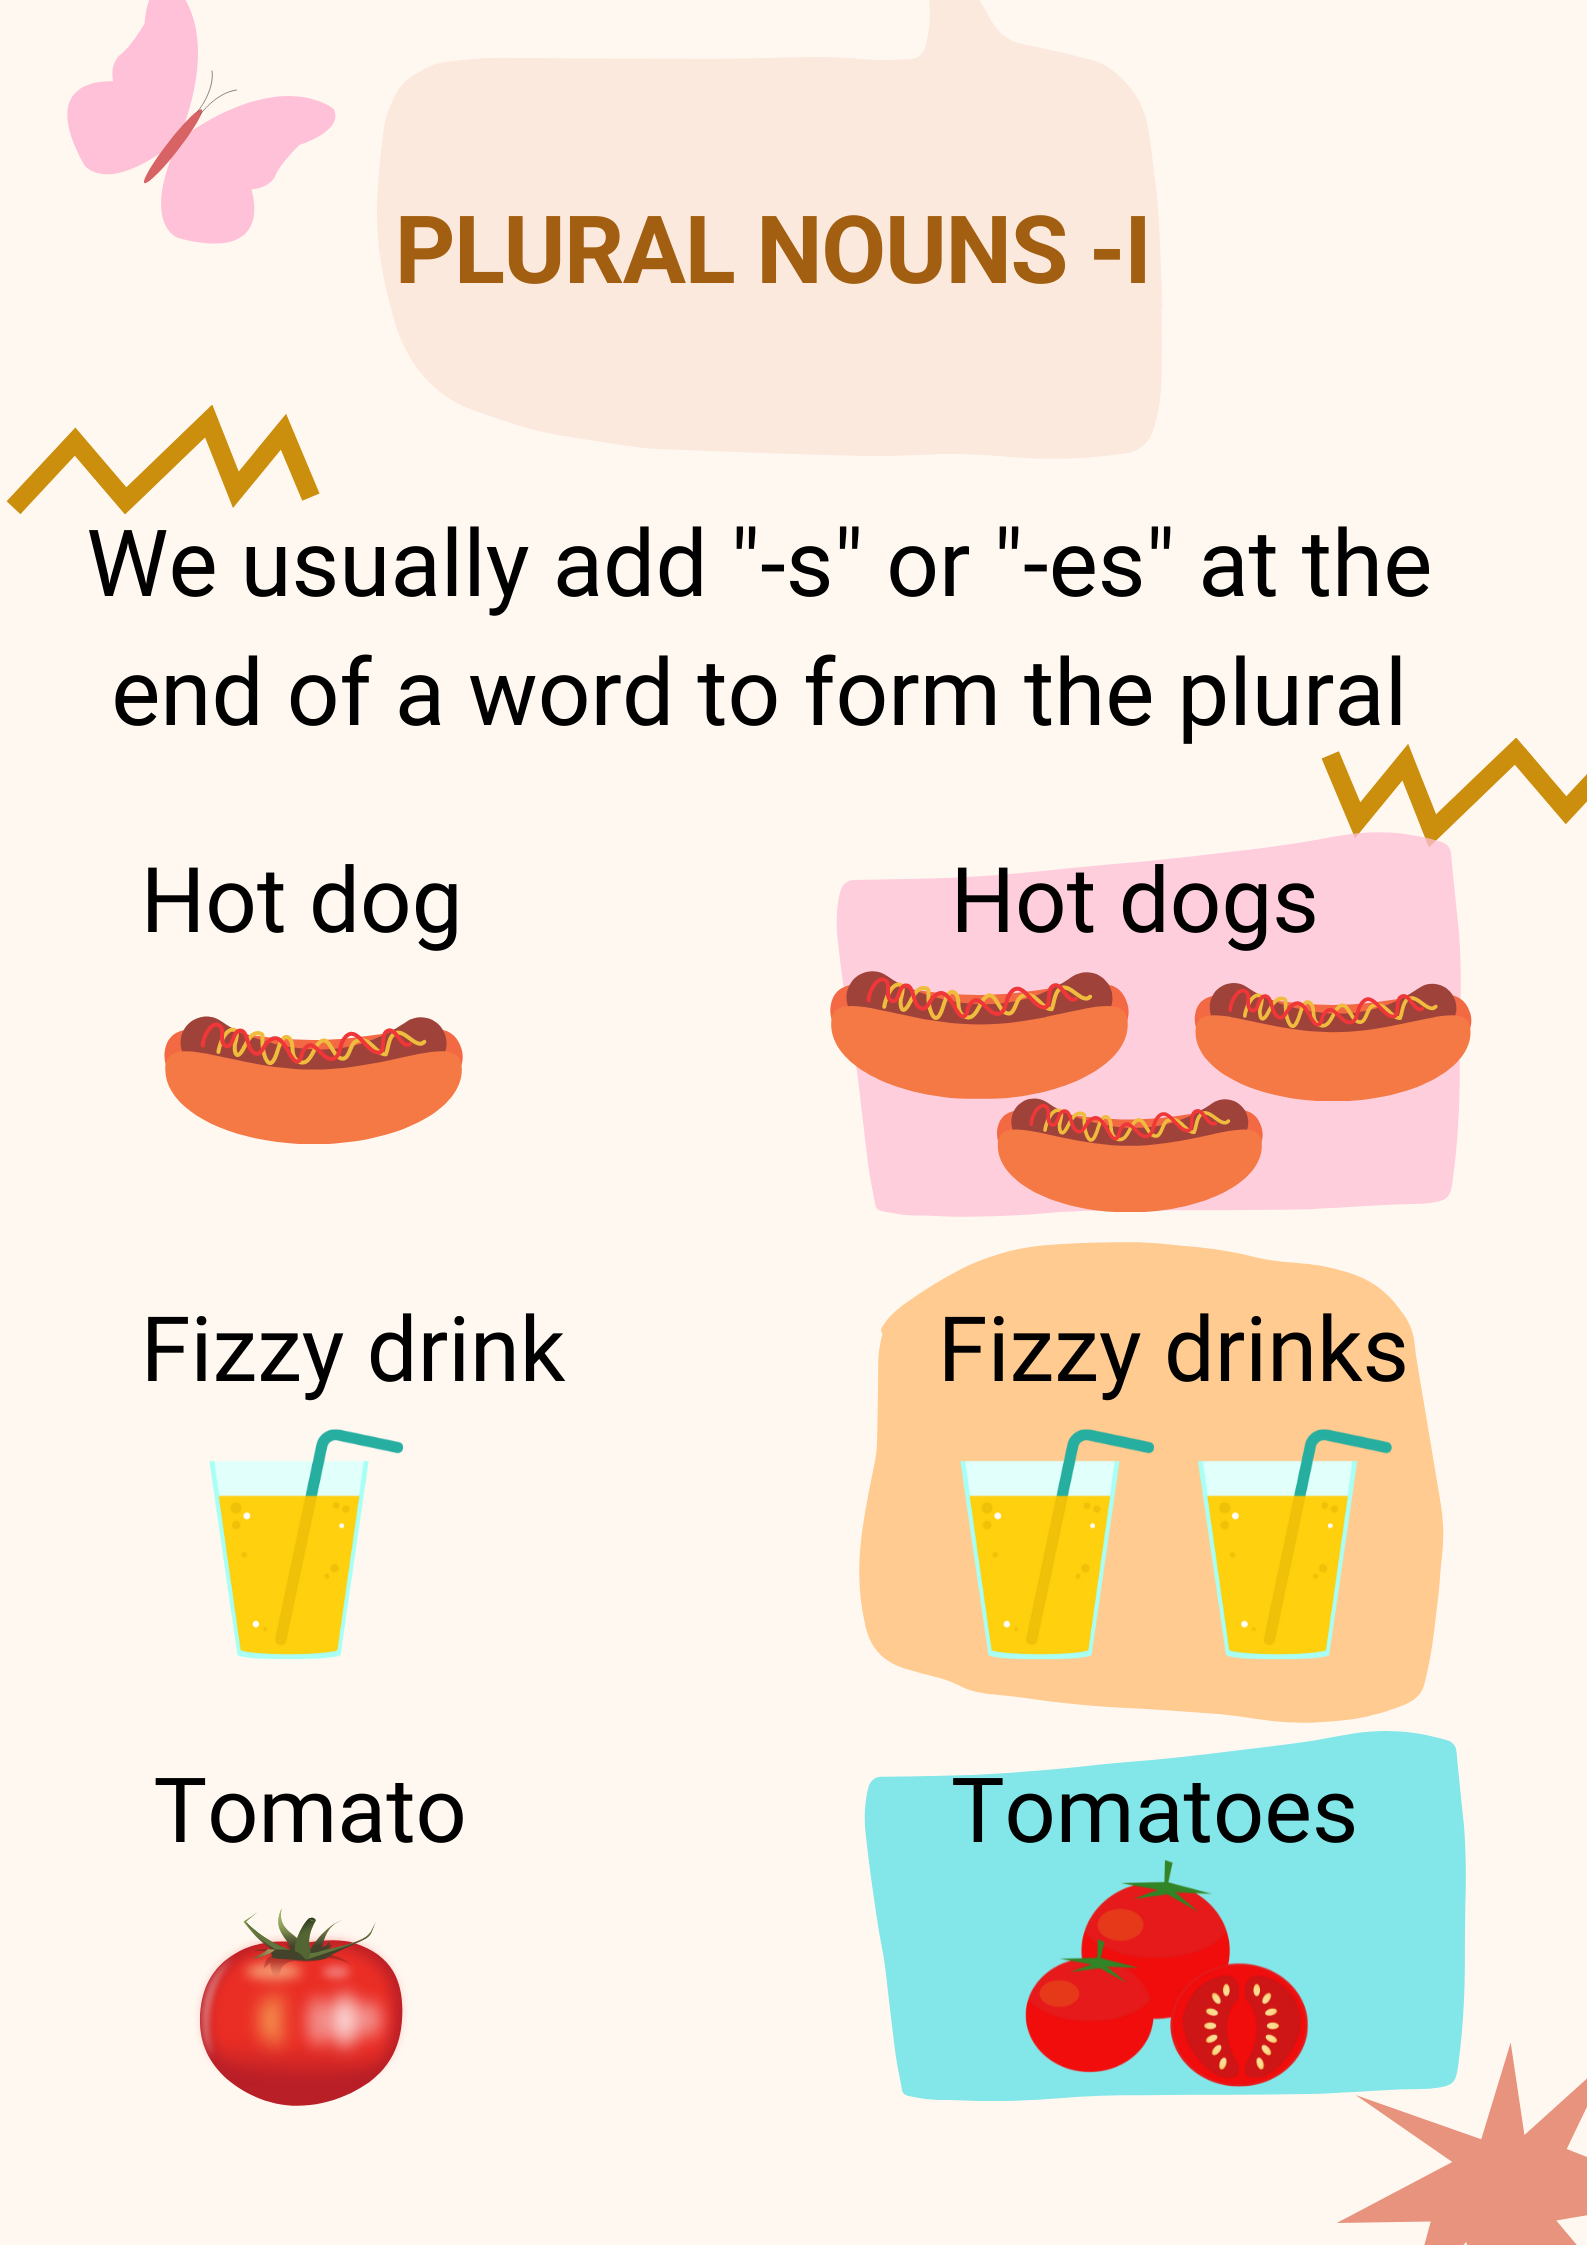 En la imagen se explica la formación del plural de los sustantivos en inglés. En concreto, se habla acerca de los nombres que forman su plural añadiendo al final “-s” o “-es”. Aparecen los dibujos de tres de estos nombres, a modo de ejemplo: Estos son: hot dog, que forma su plural, añadiendo una “-s” al final, por lo que queda hot dogs. Fizzy drink, que también forma su plural añadiendo una “-s” al final, fizzy drinks. Y por último, aparece un tomate, en inglés tomato, que forma su plural, añadiendo “-es” al final, quedando tomatoes